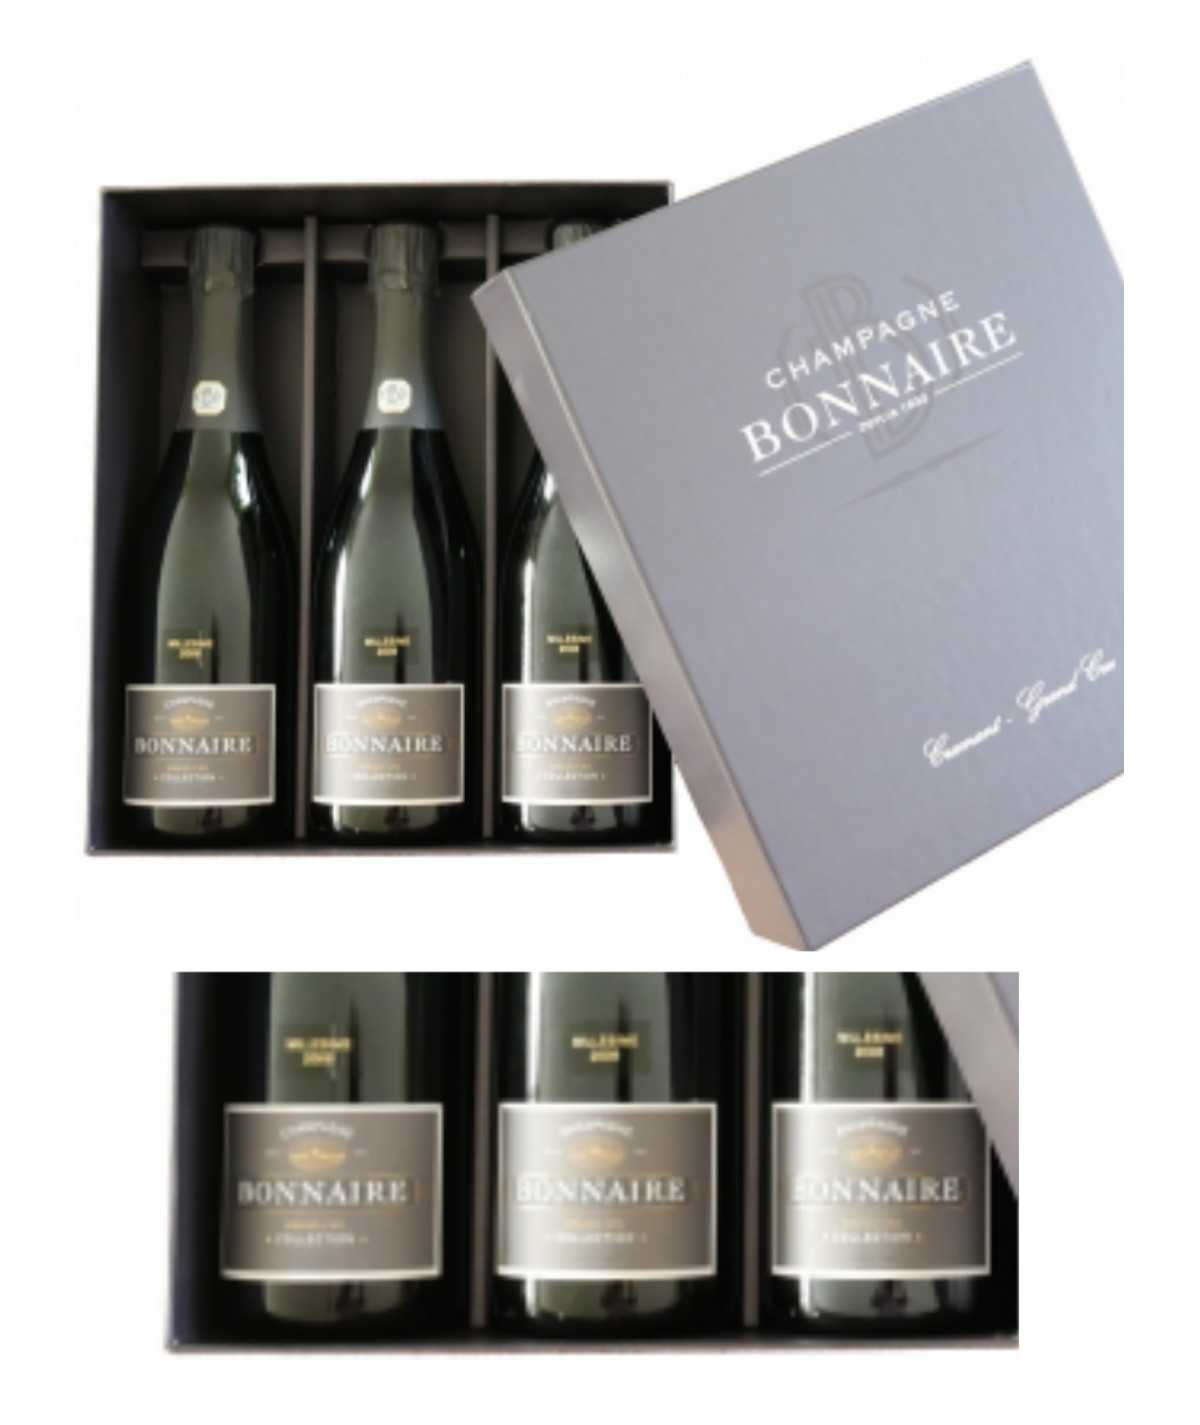 Champagne gift Set BONNAIRE Trilogie – Différentes Vinifications “Edition Limitée” 2008 – 3 Bouteilles